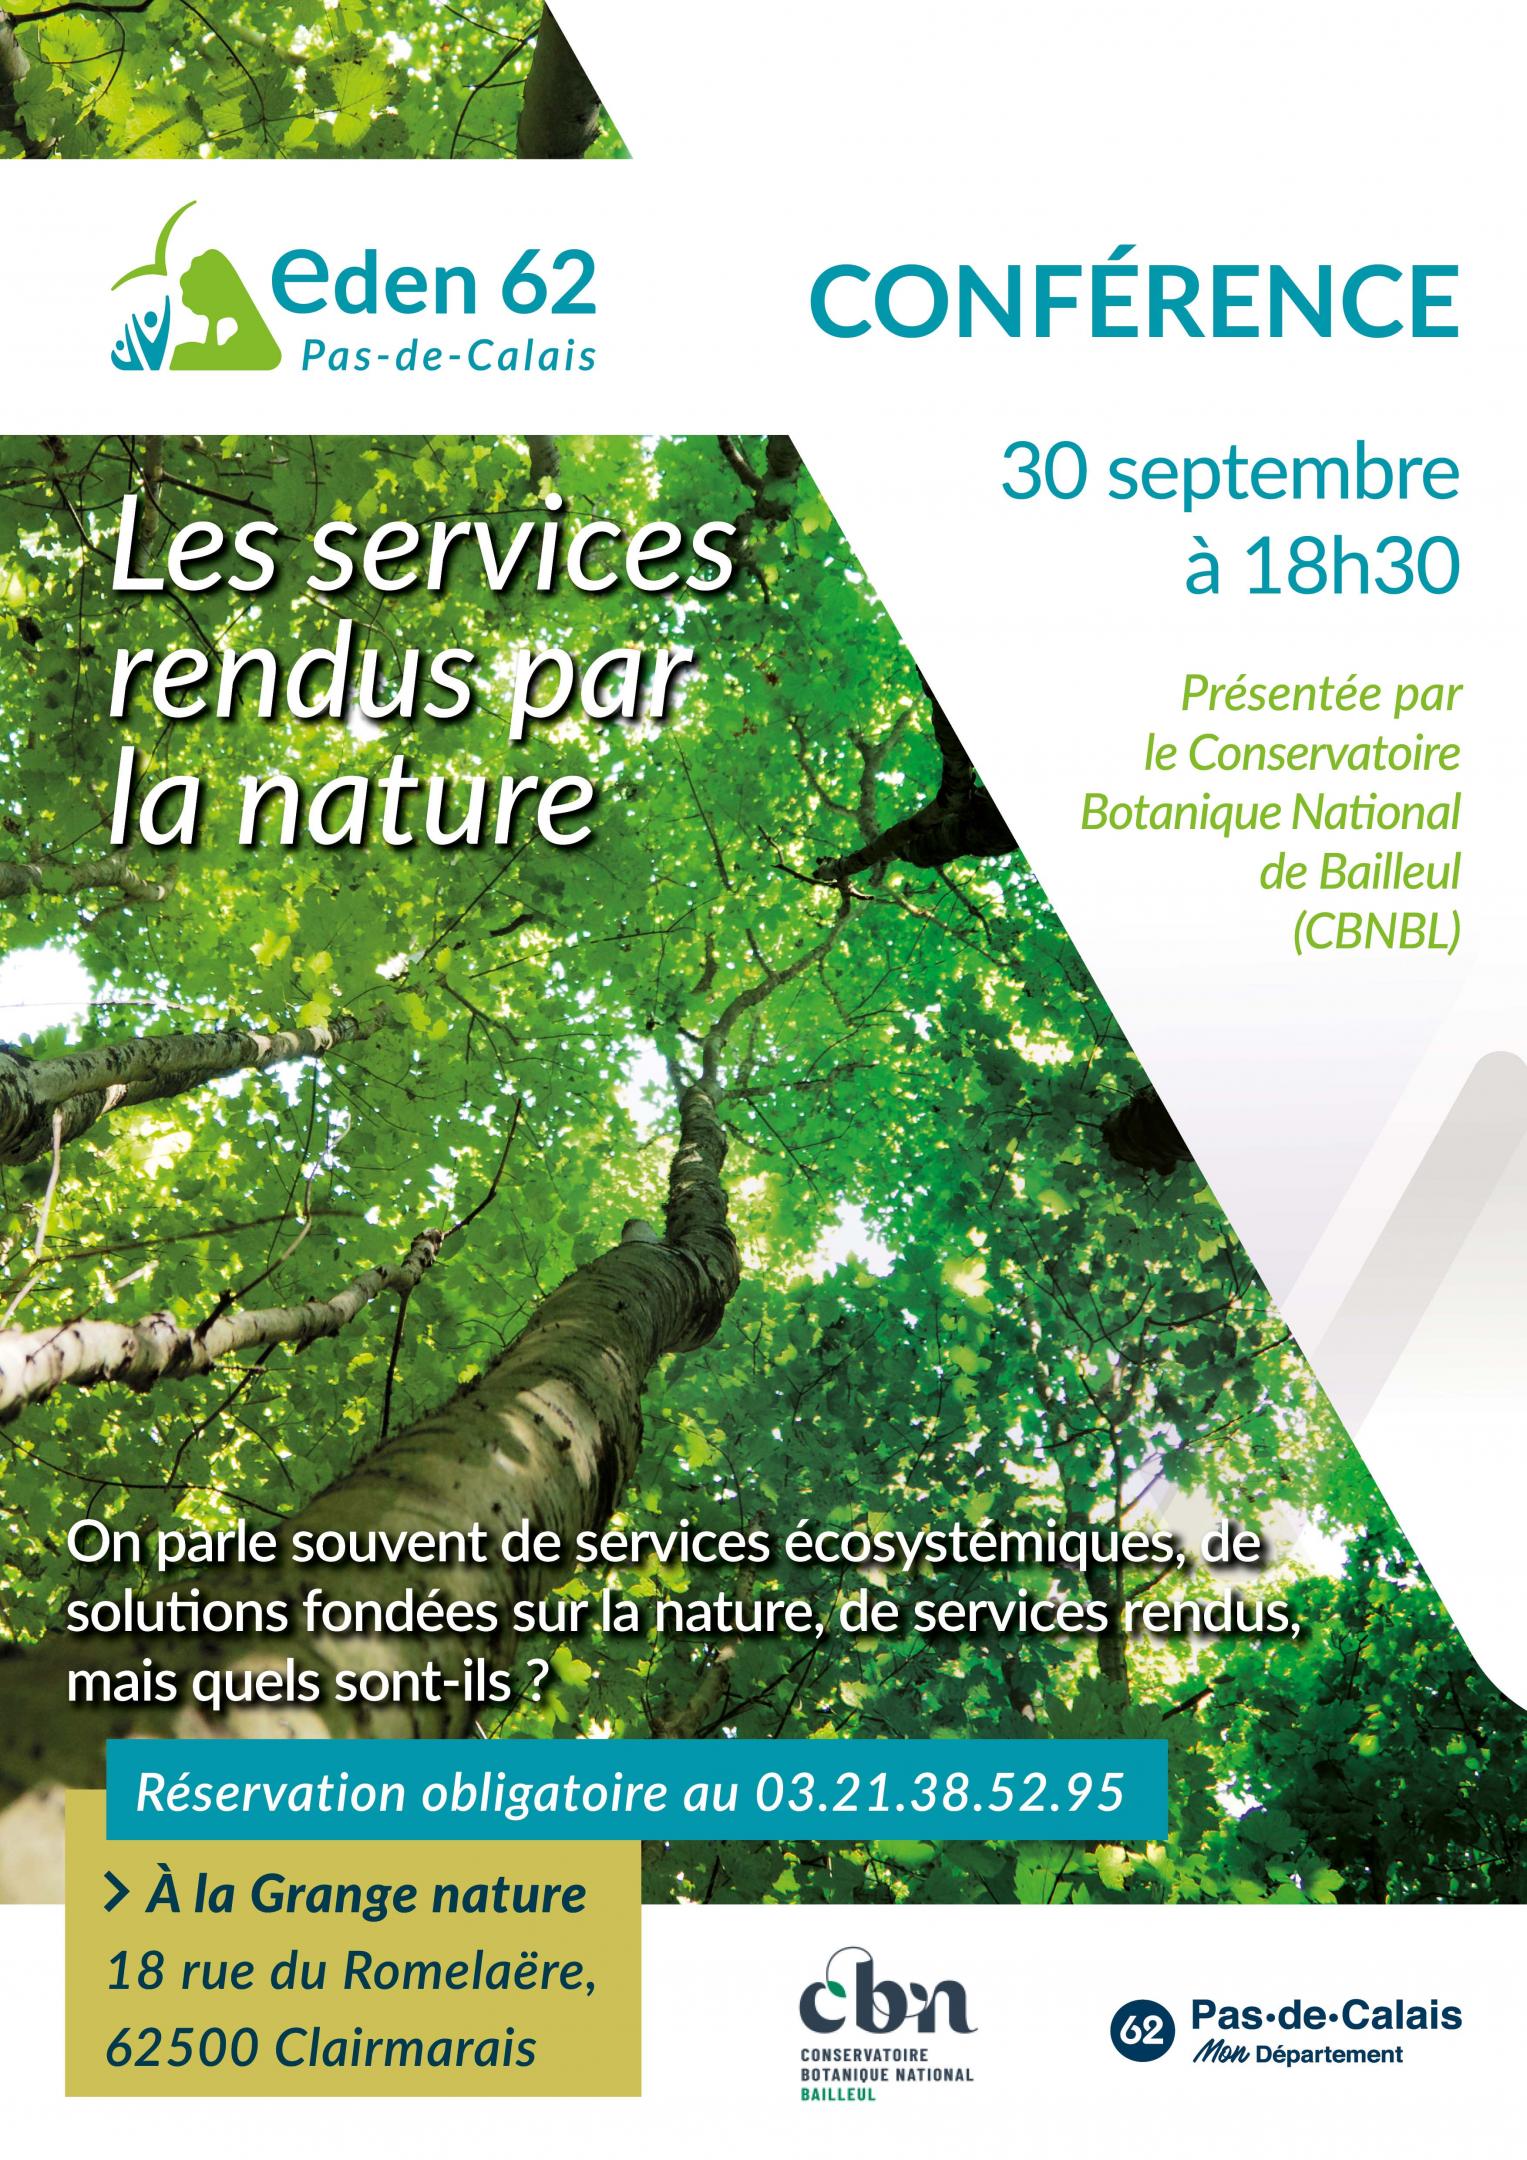 Conférence "les services rendus par la nature" à la Grange nature de Clairmarais (62)